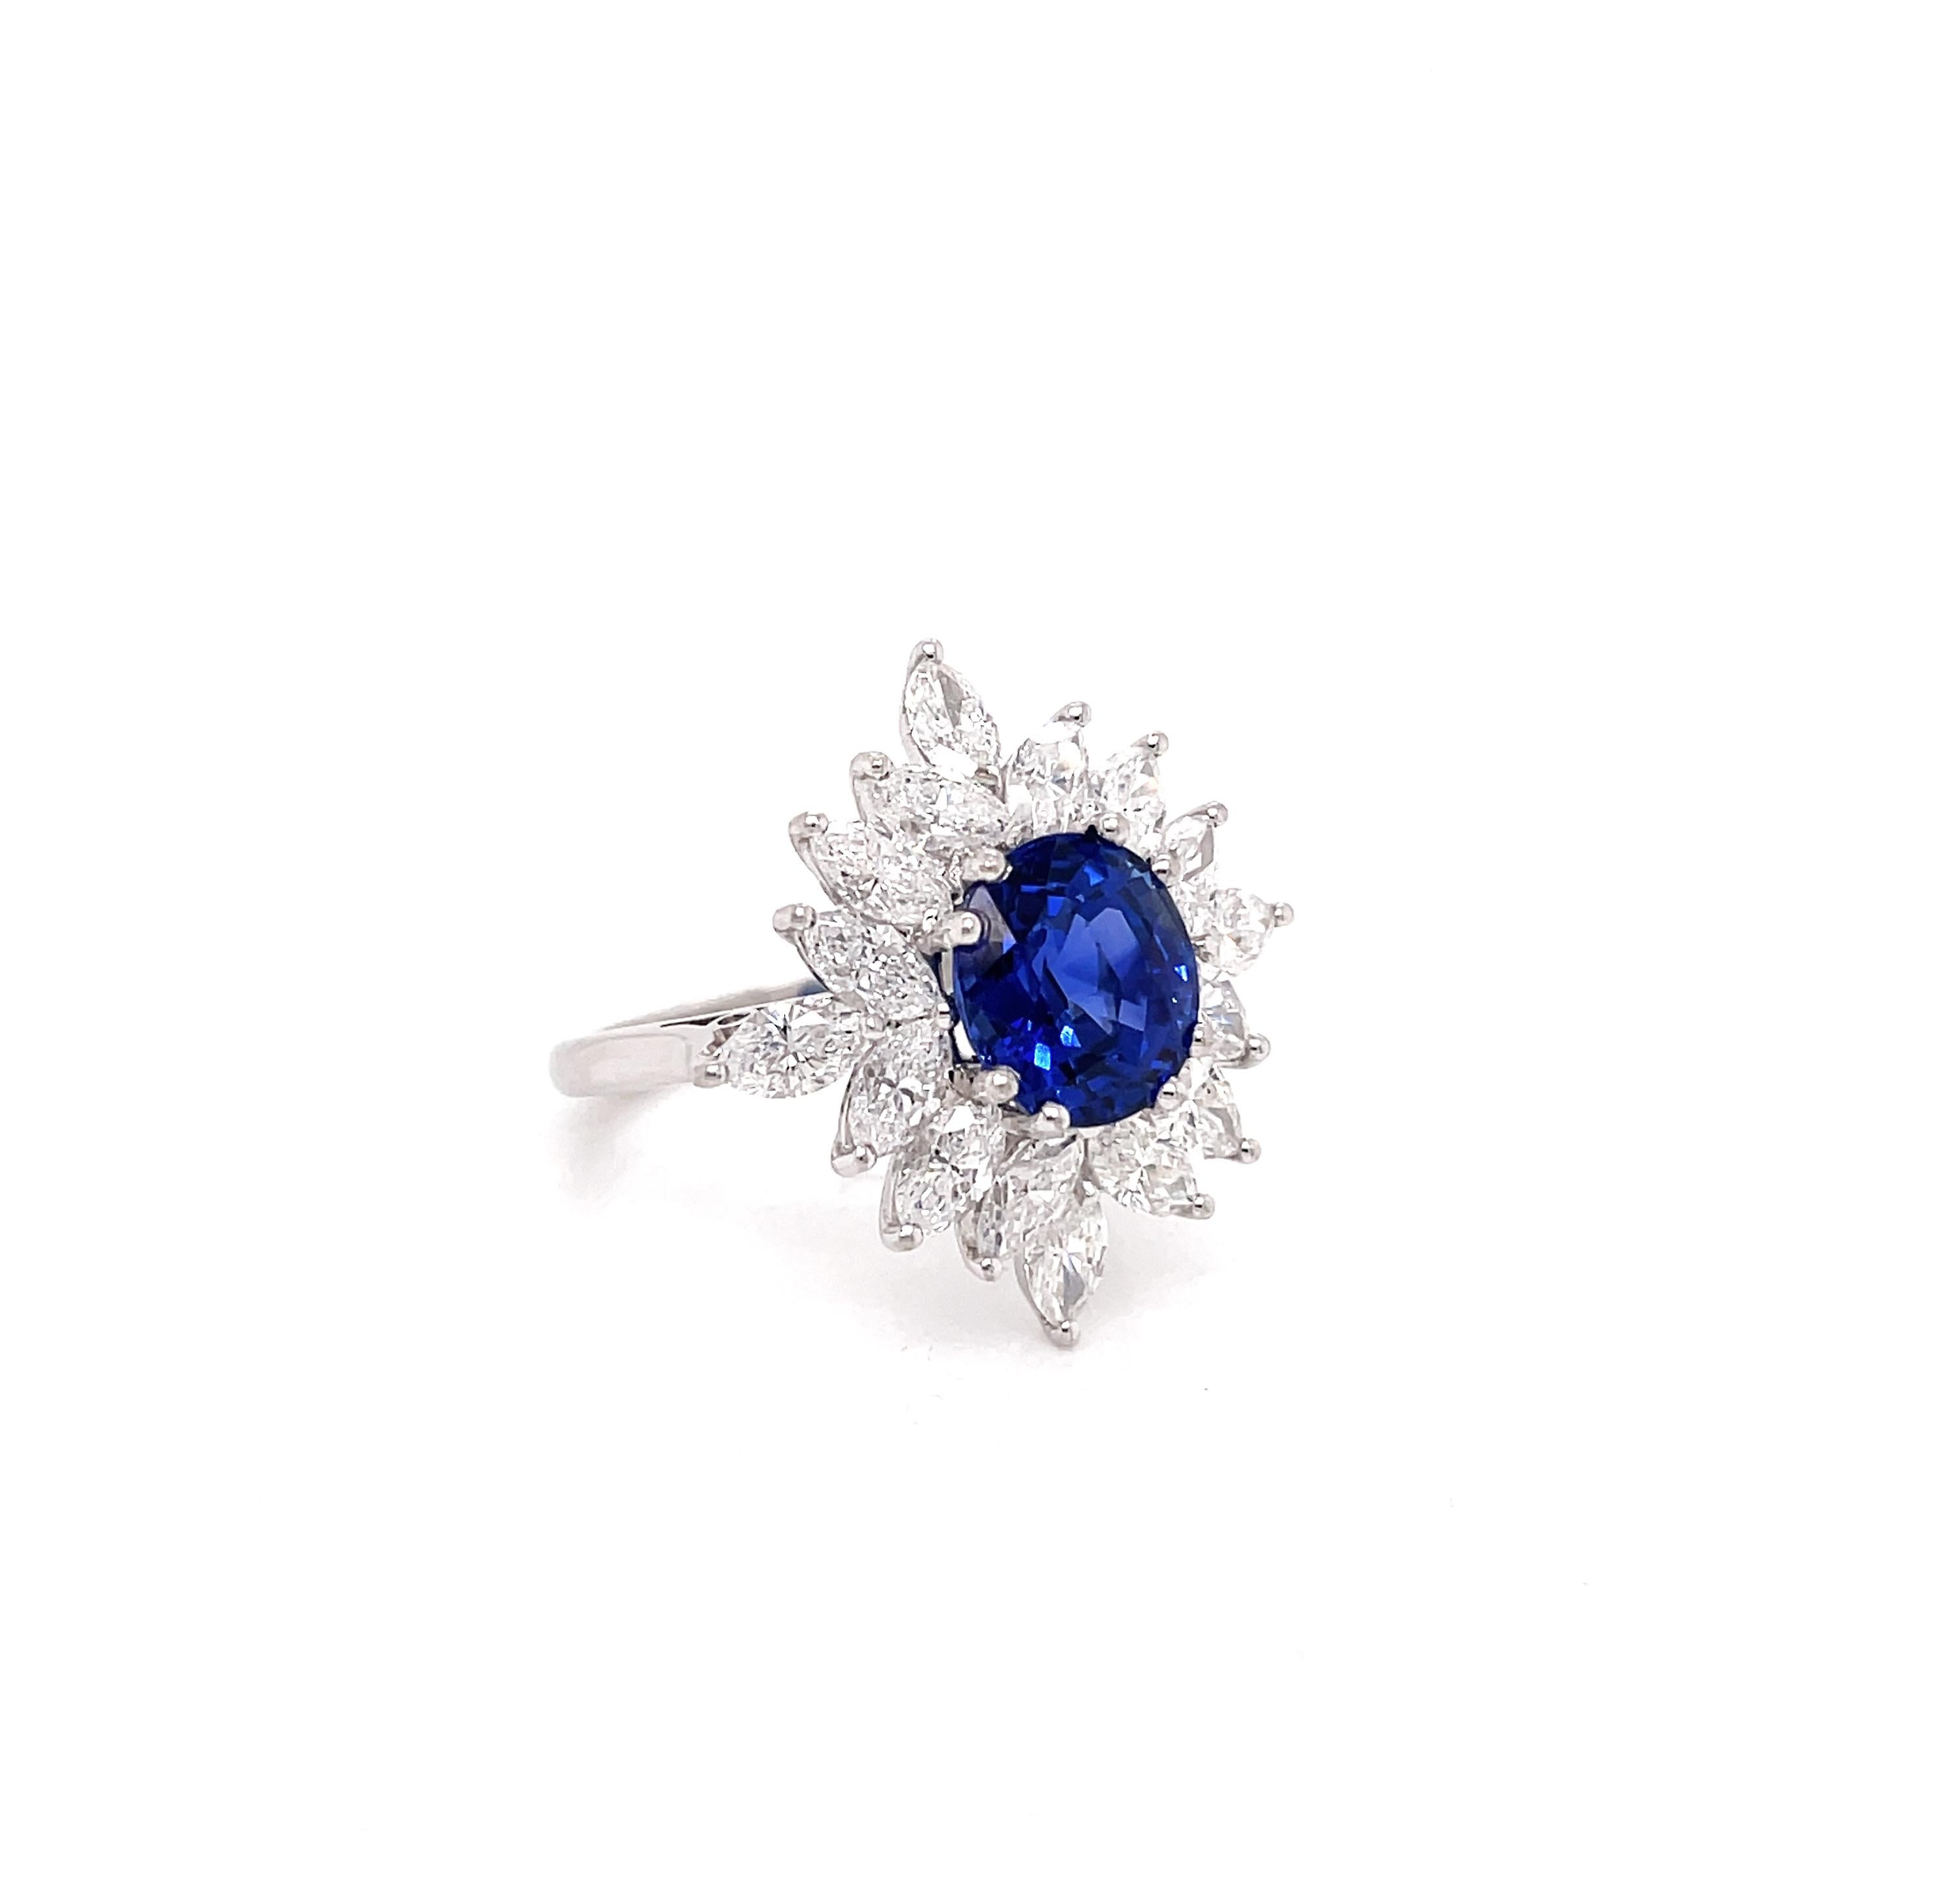 Dieser wunderschöne Vintage-Ring ist mit einem königsblauen ovalen Saphir mit einem Gewicht von 3,09 Karat besetzt, der in einer Fassung mit acht Krallen und offener Rückseite montiert ist. Der Edelstein ist perfekt in der Mitte eines wunderschönen